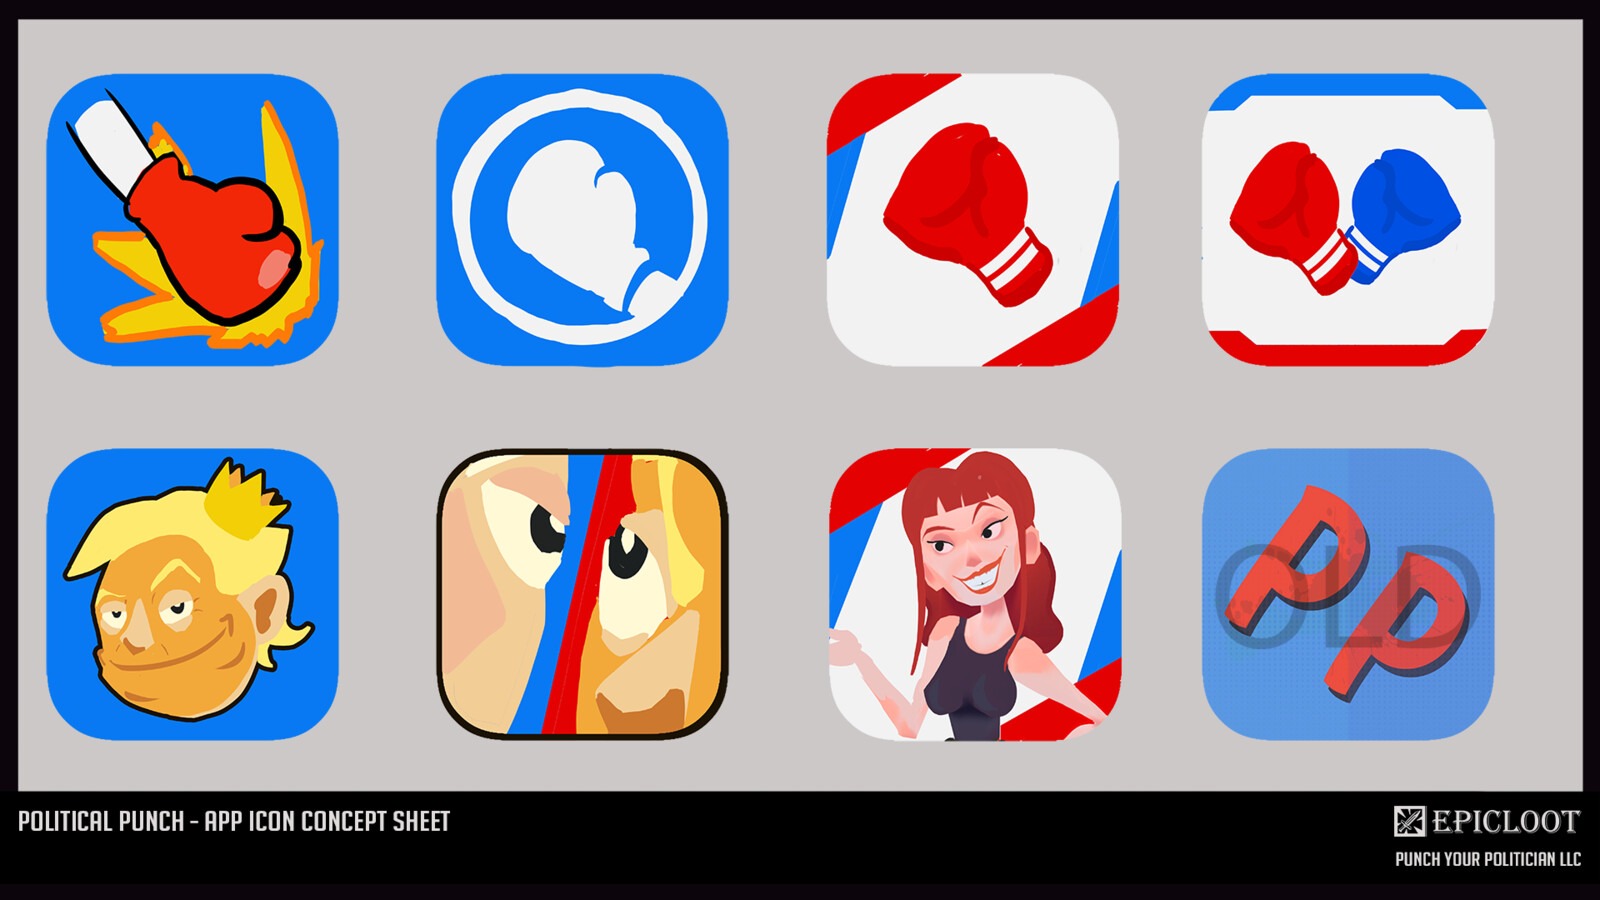 App Icon Concept Sheet